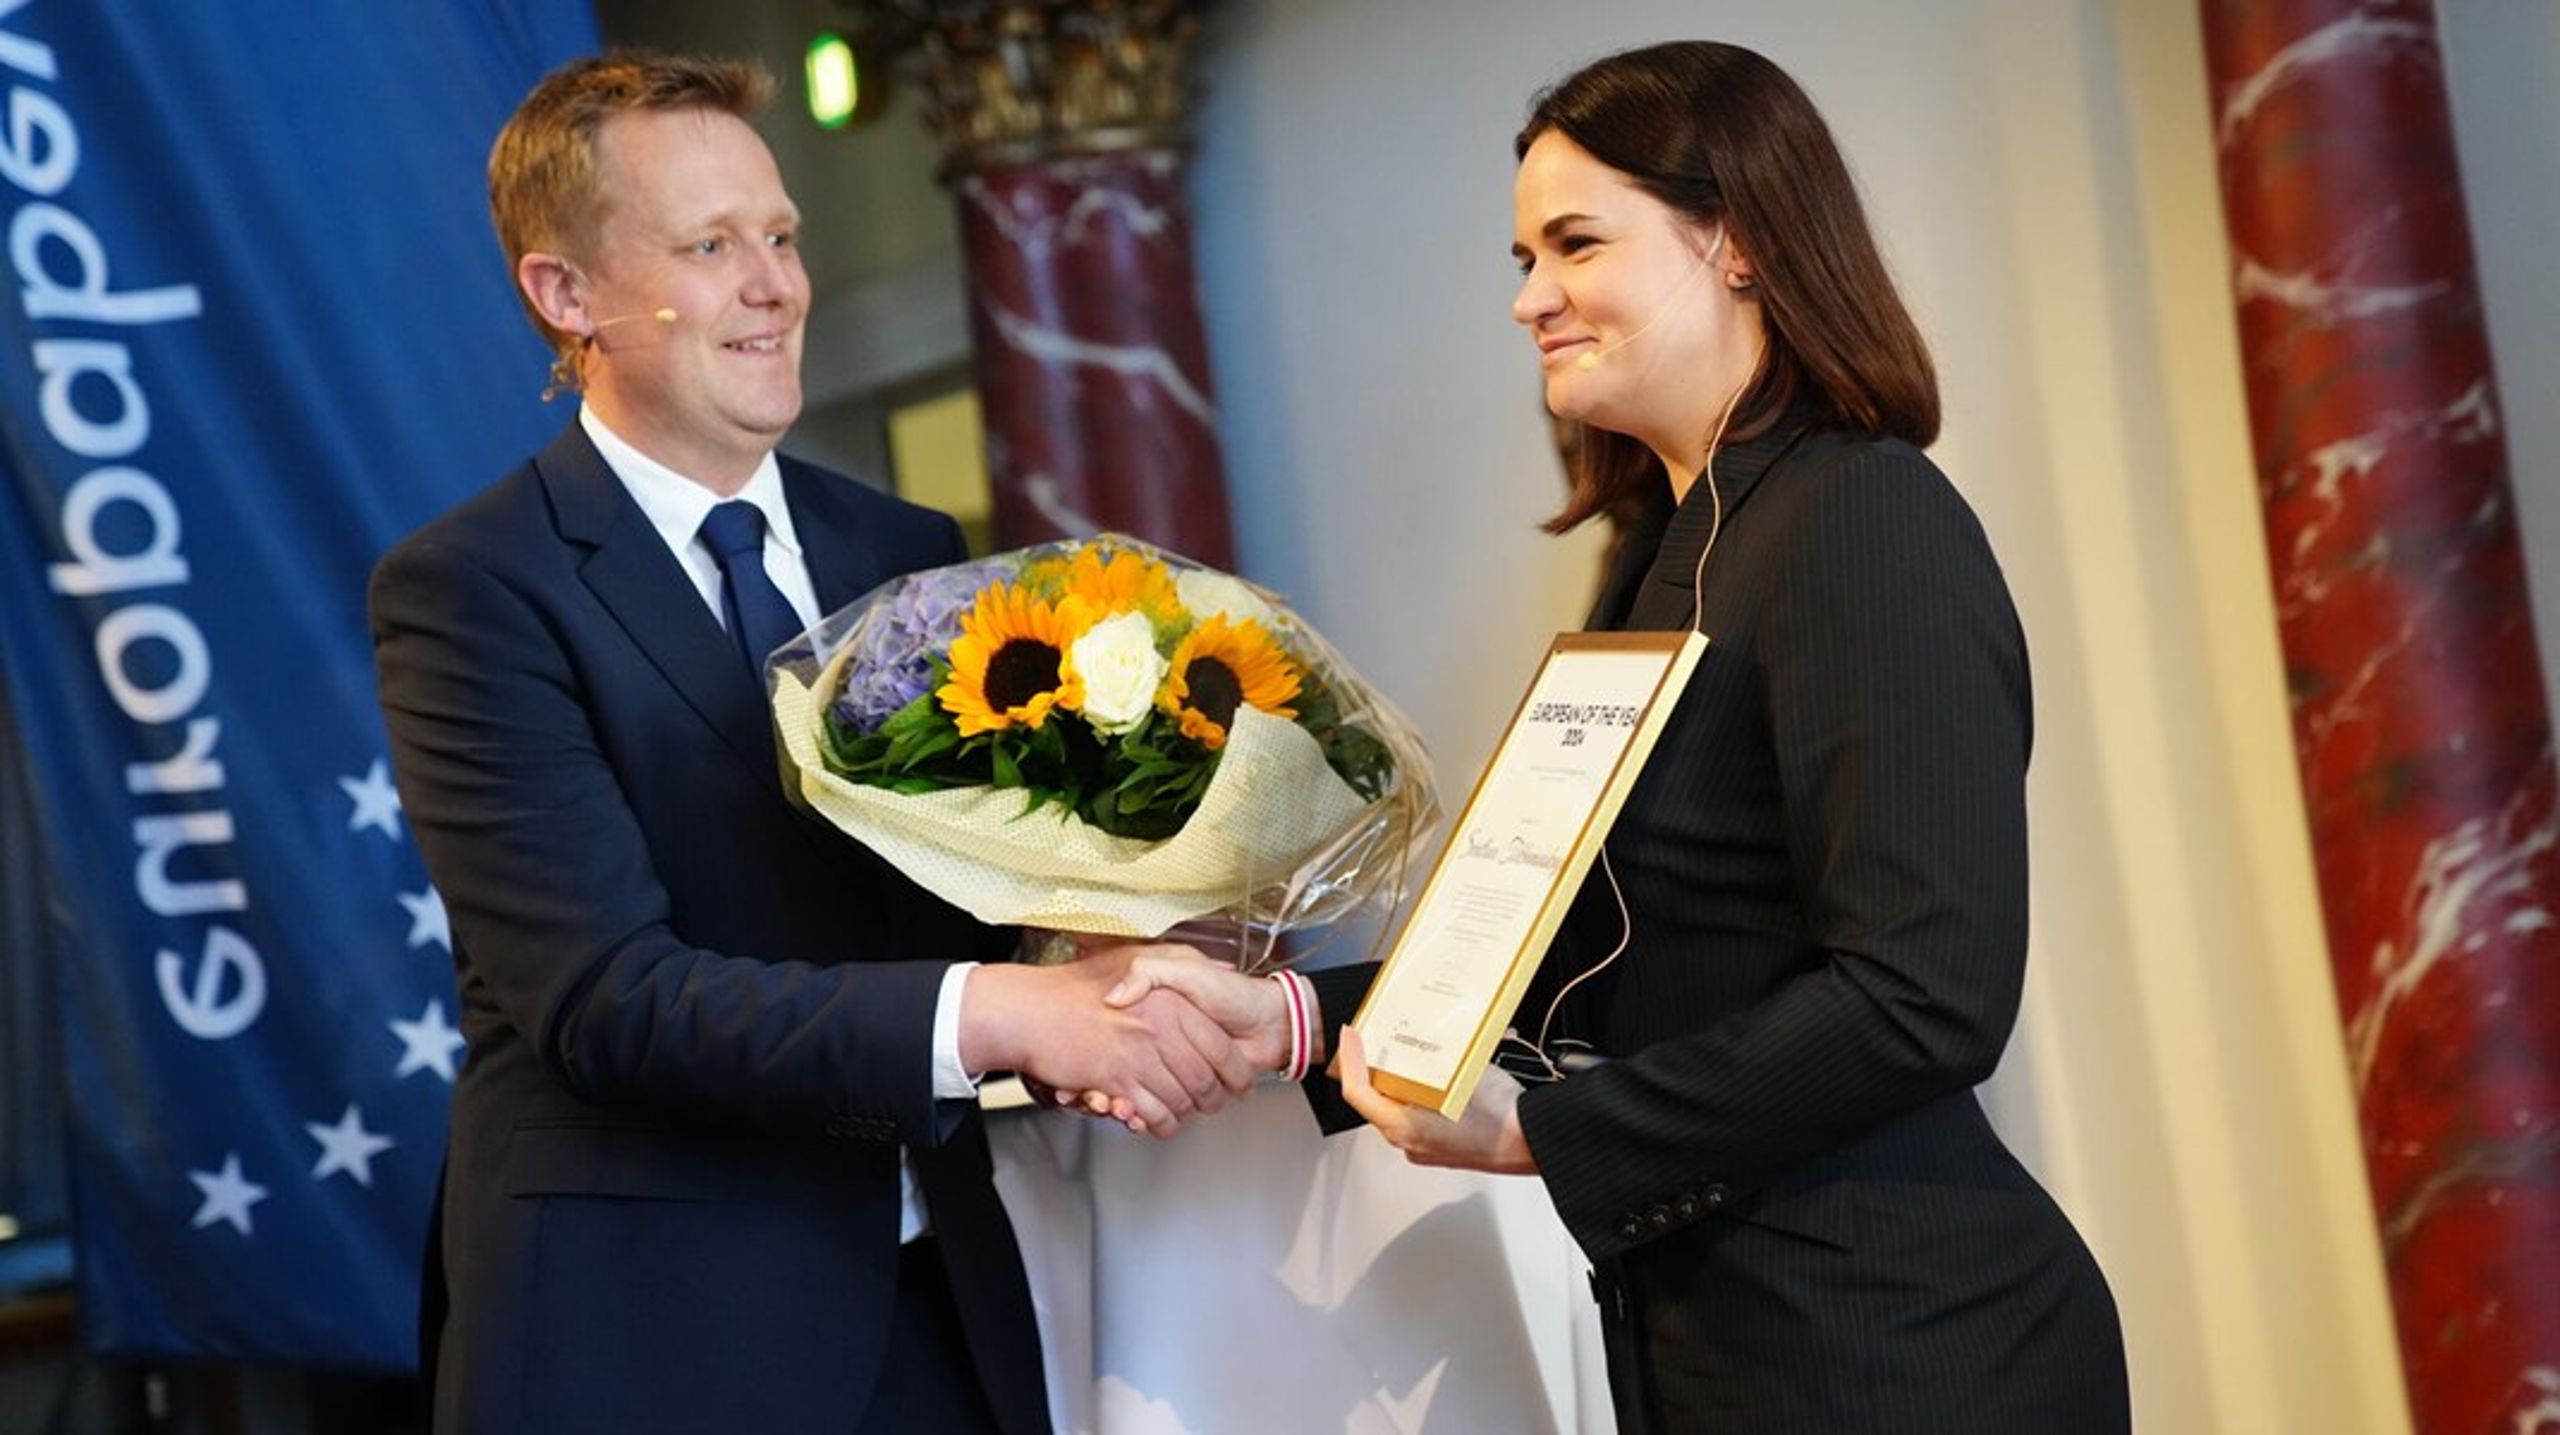 Lederen af den belarusiske demokratibevægelse, Svetlana Tikhanovskaja, fik prisen 'Årets Europæer' på Nationalmuseet i København.